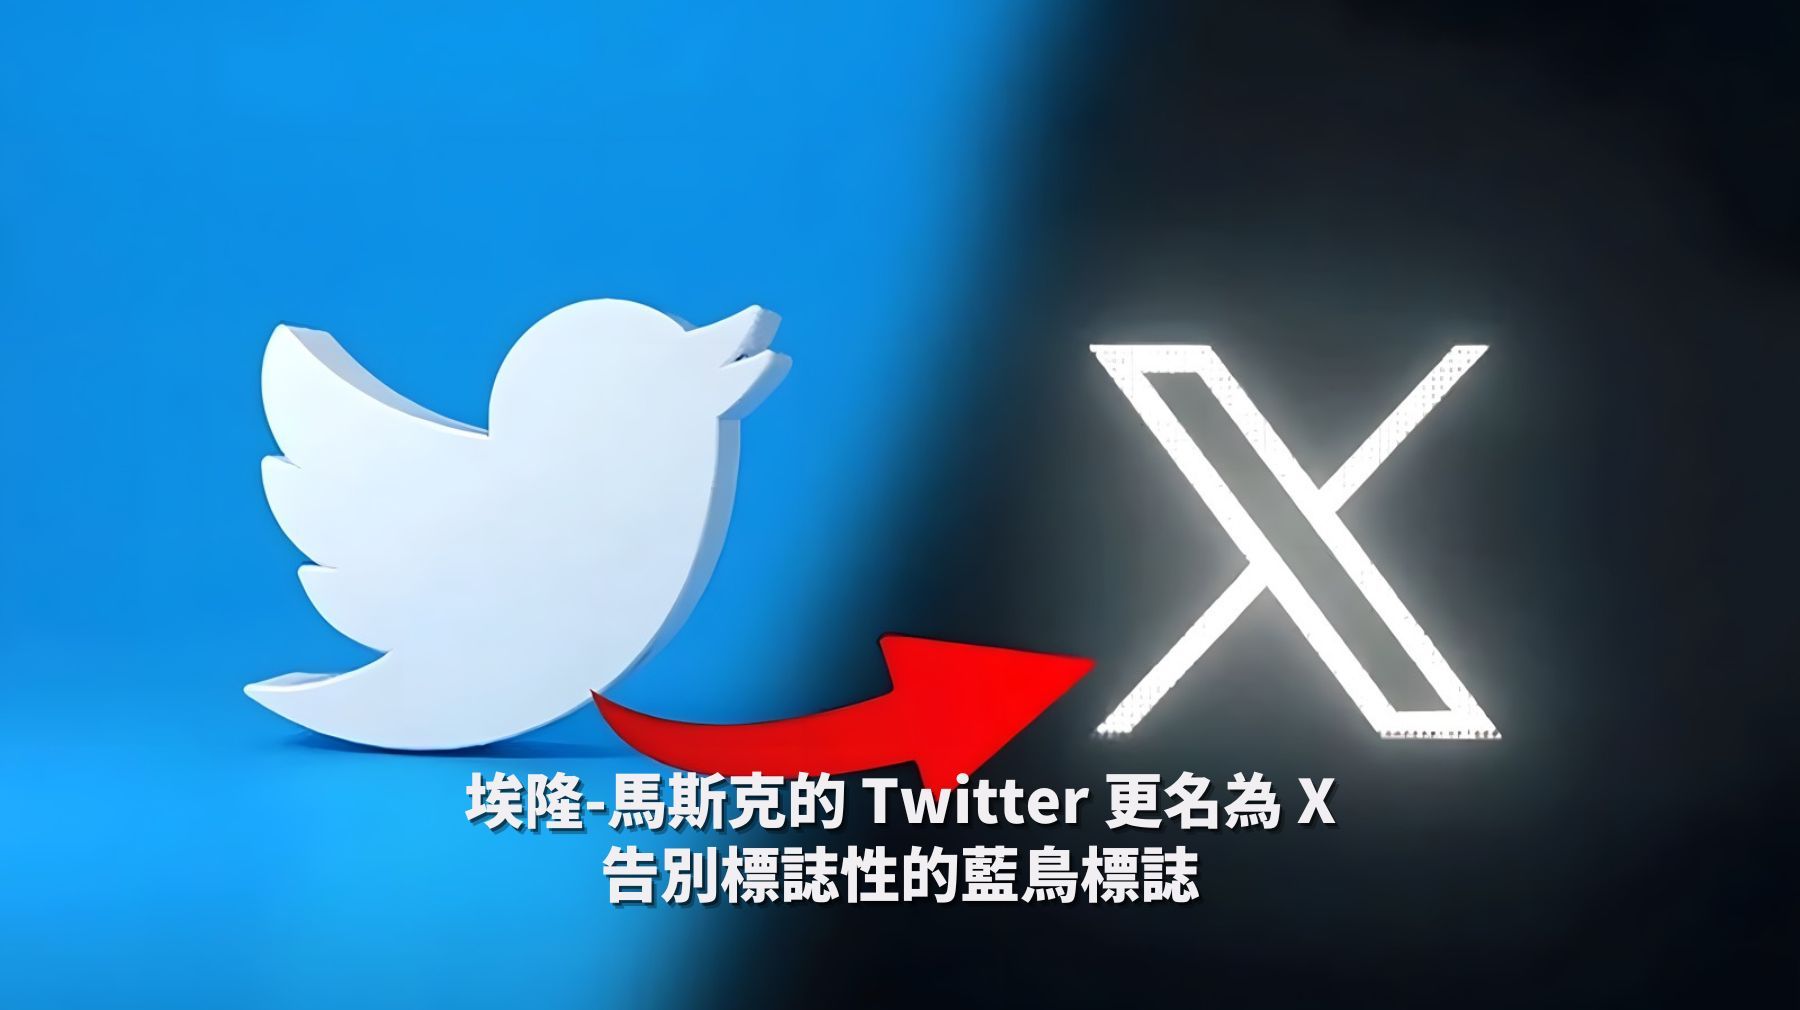 馬斯克「隨心所欲」的代價：Twitter變更名為「X」 估計市值可能縮水數十億美金